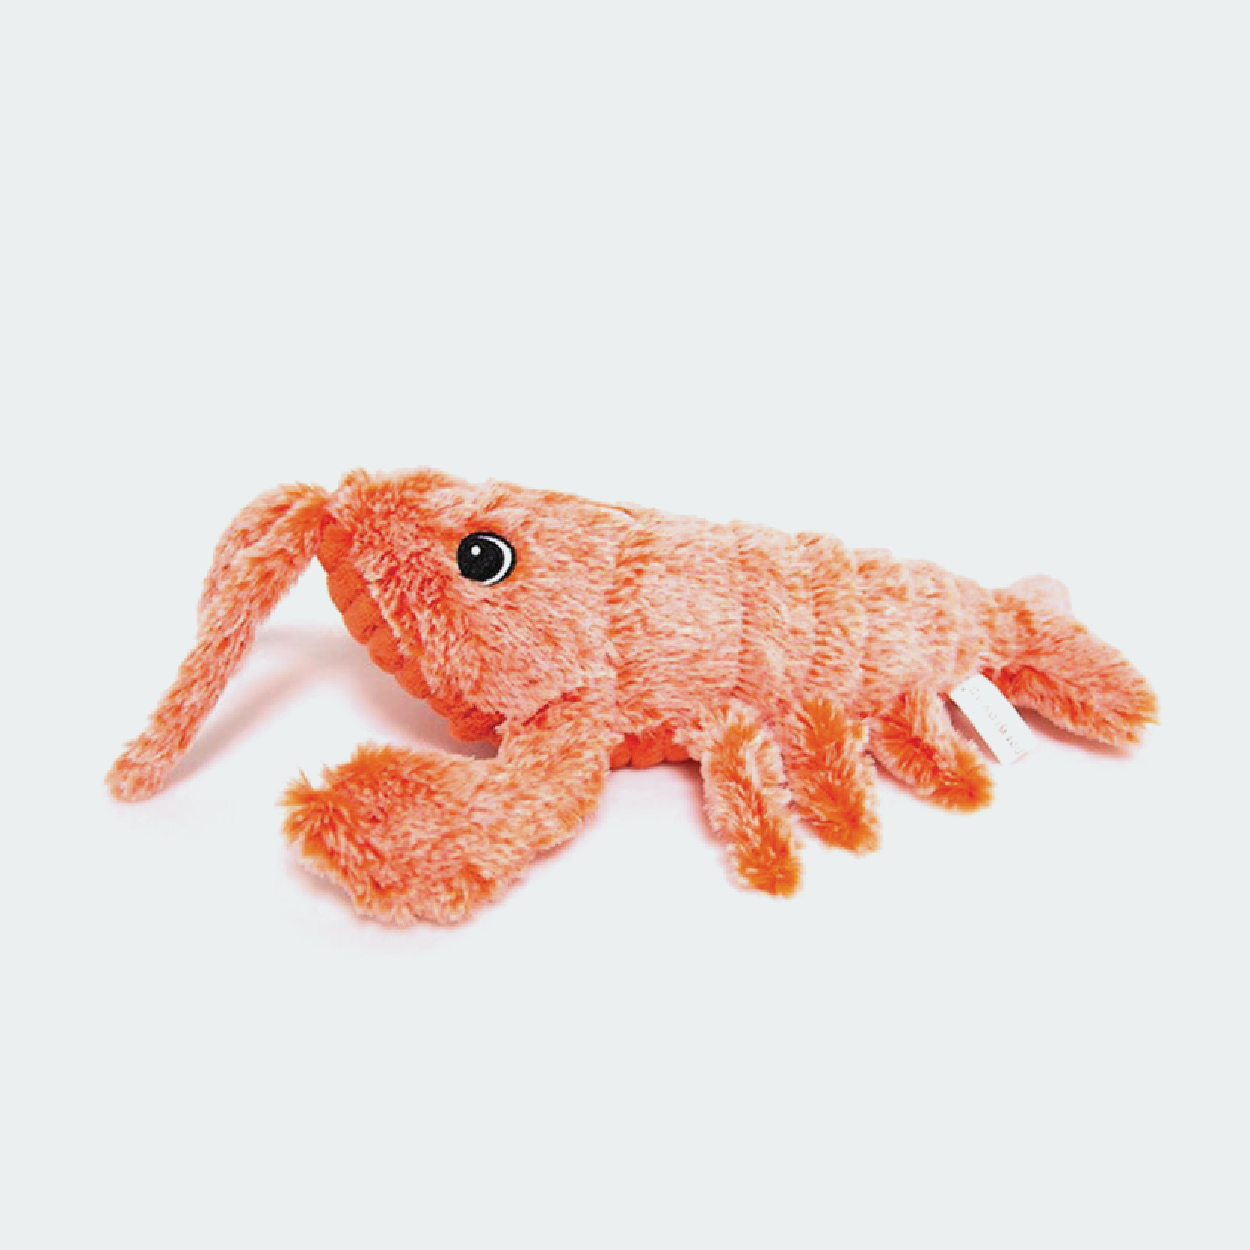 DDMK™ Floppy Lobster™ interactive pet toy